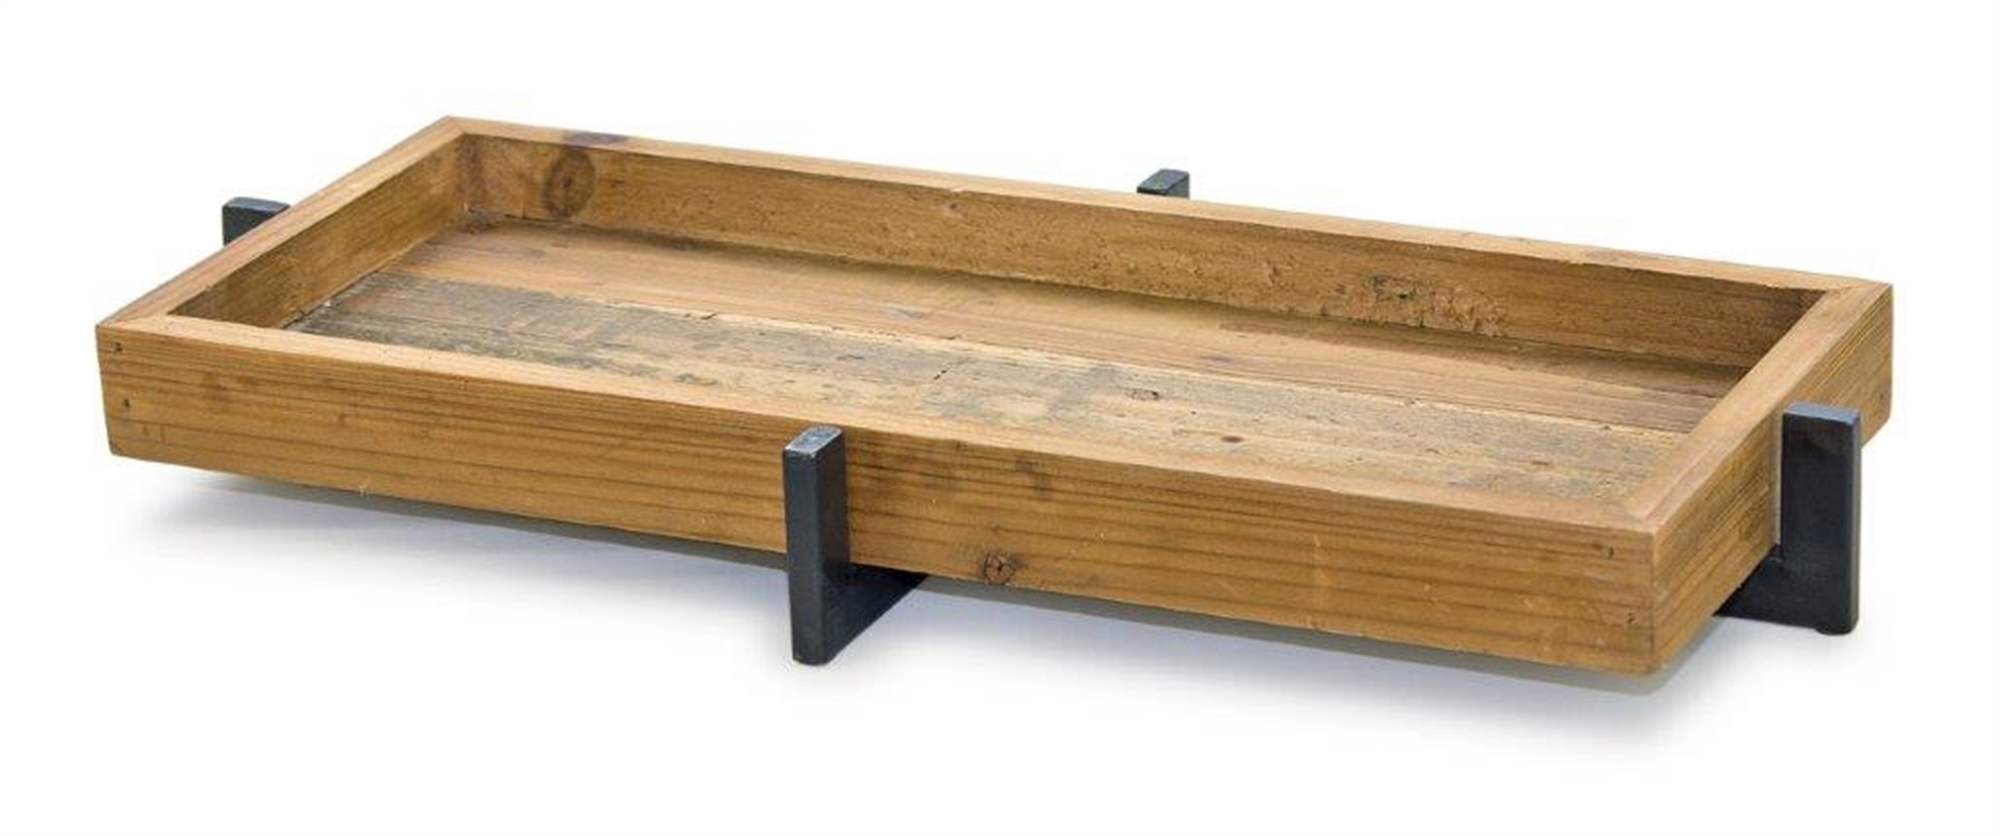 Tray 20"L x 9.75"W x 2.5"H Iron/Wood